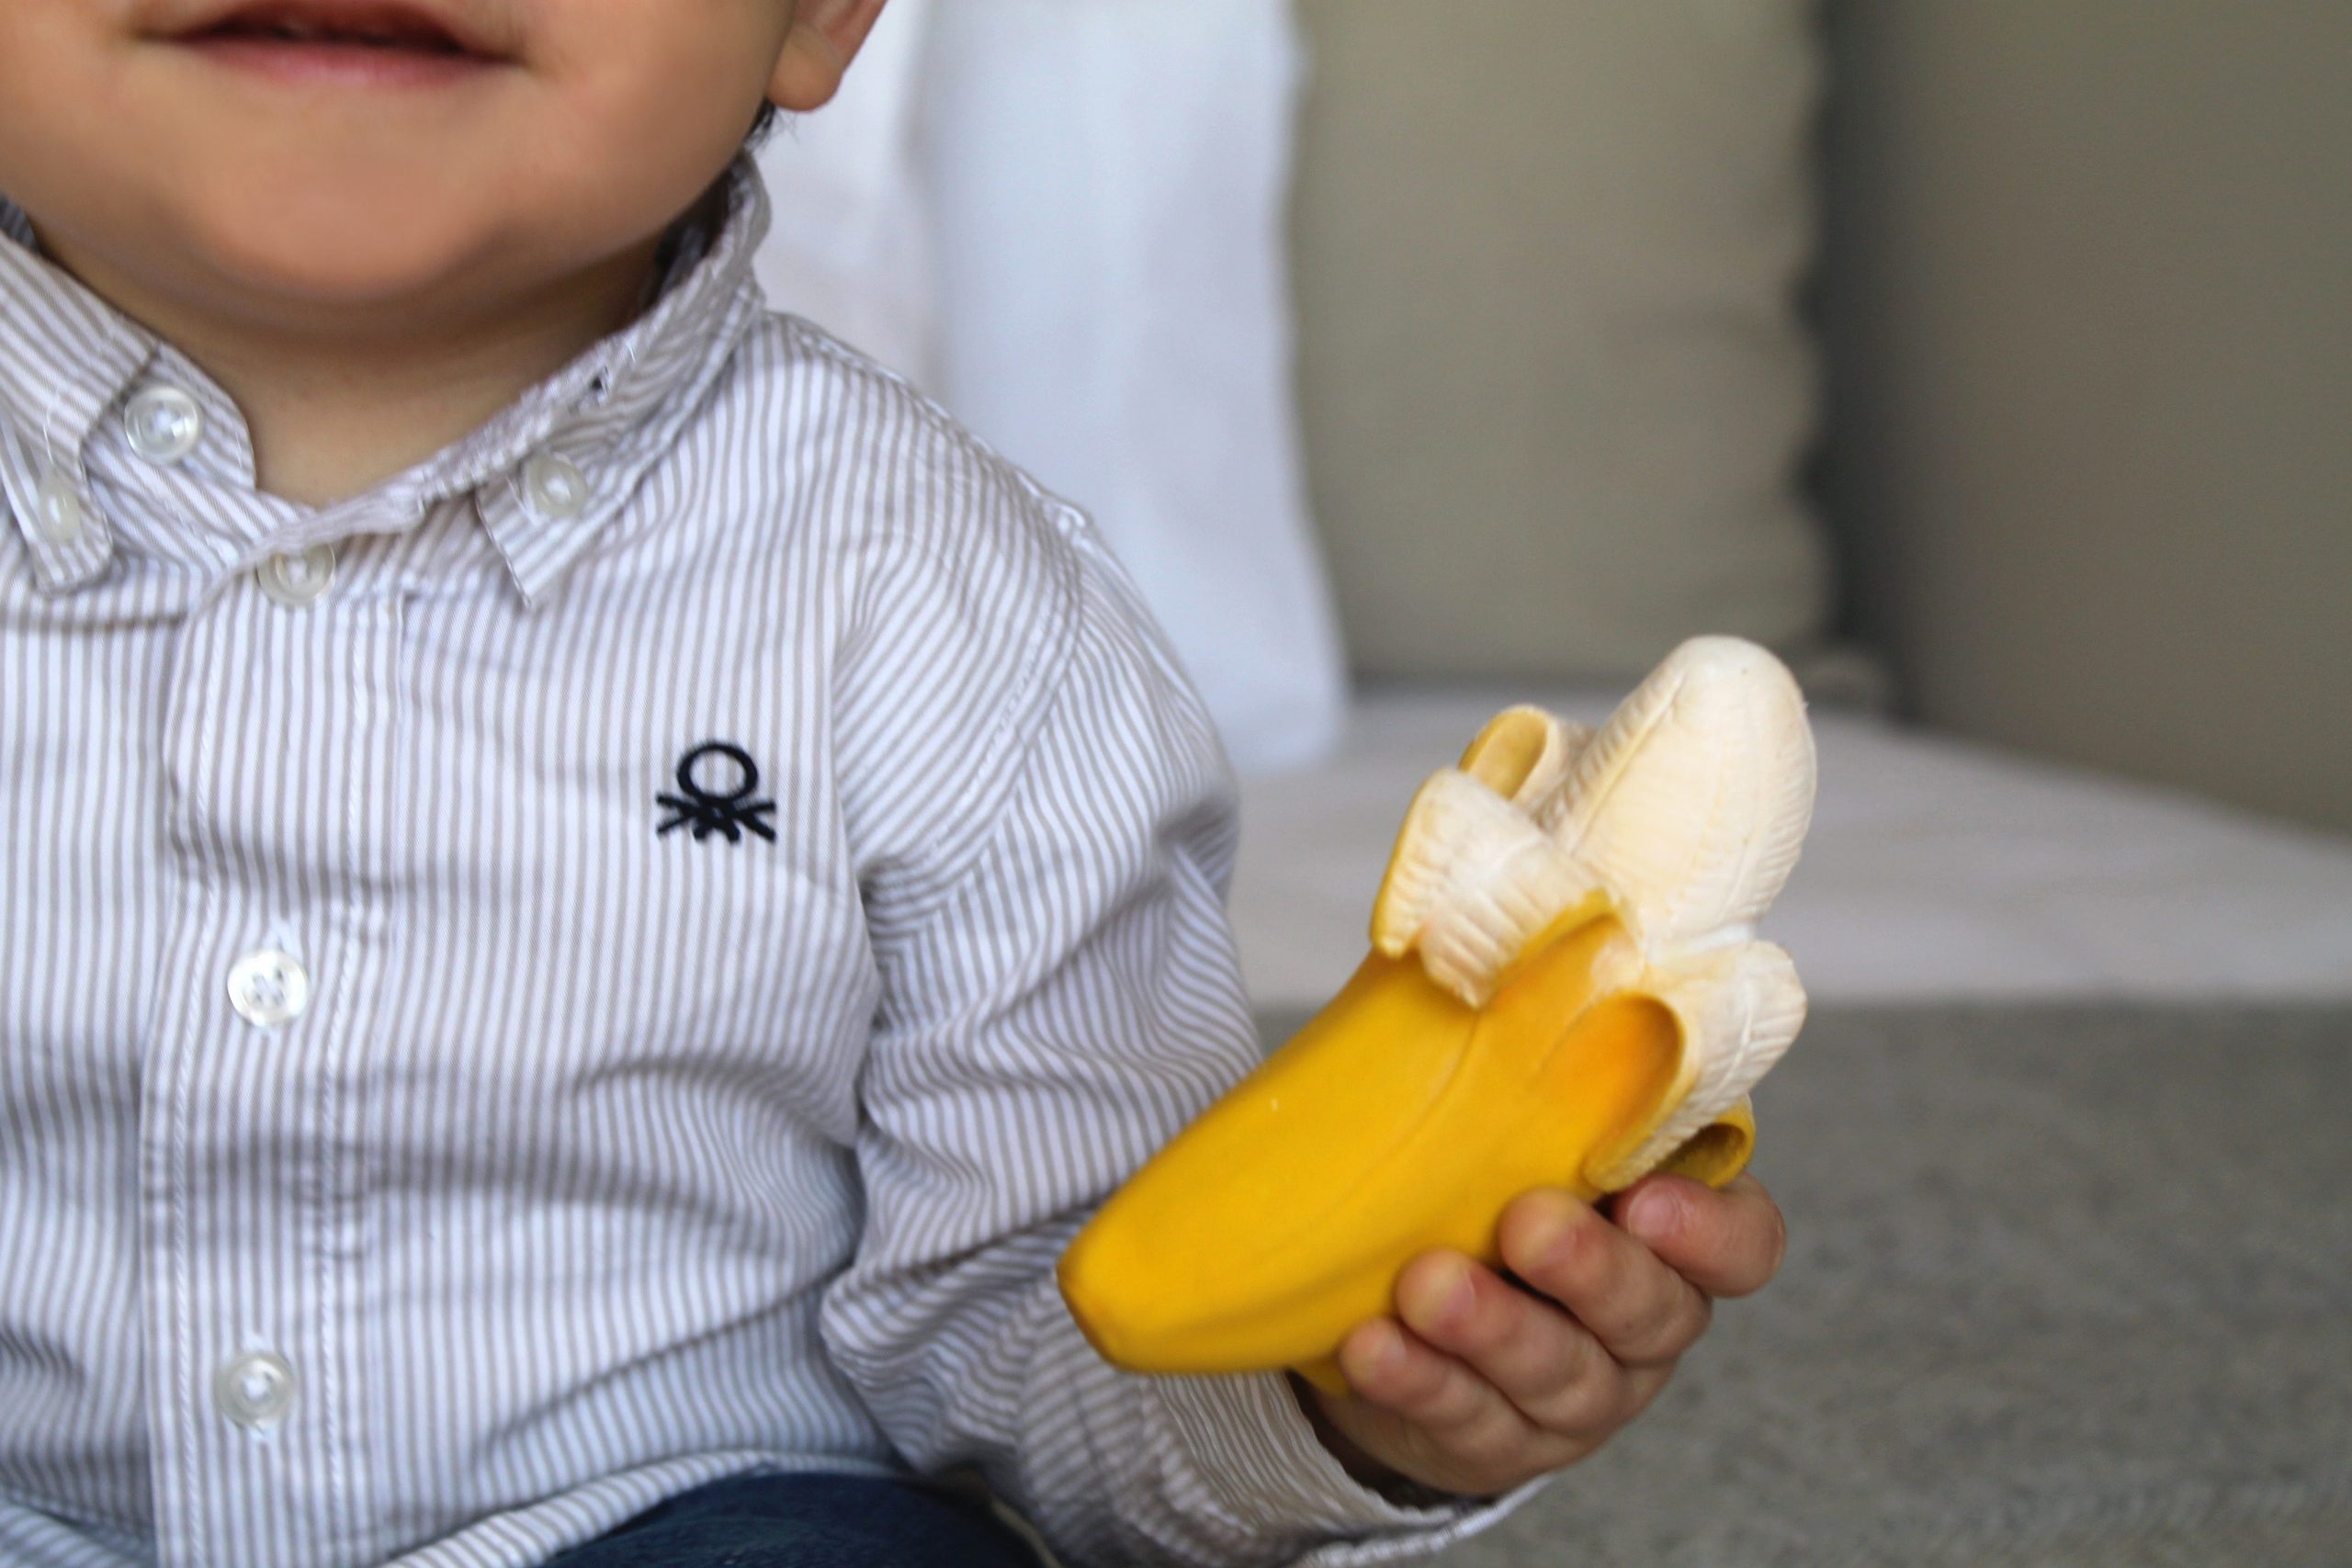 Jouet de dentition pour bébé, banane